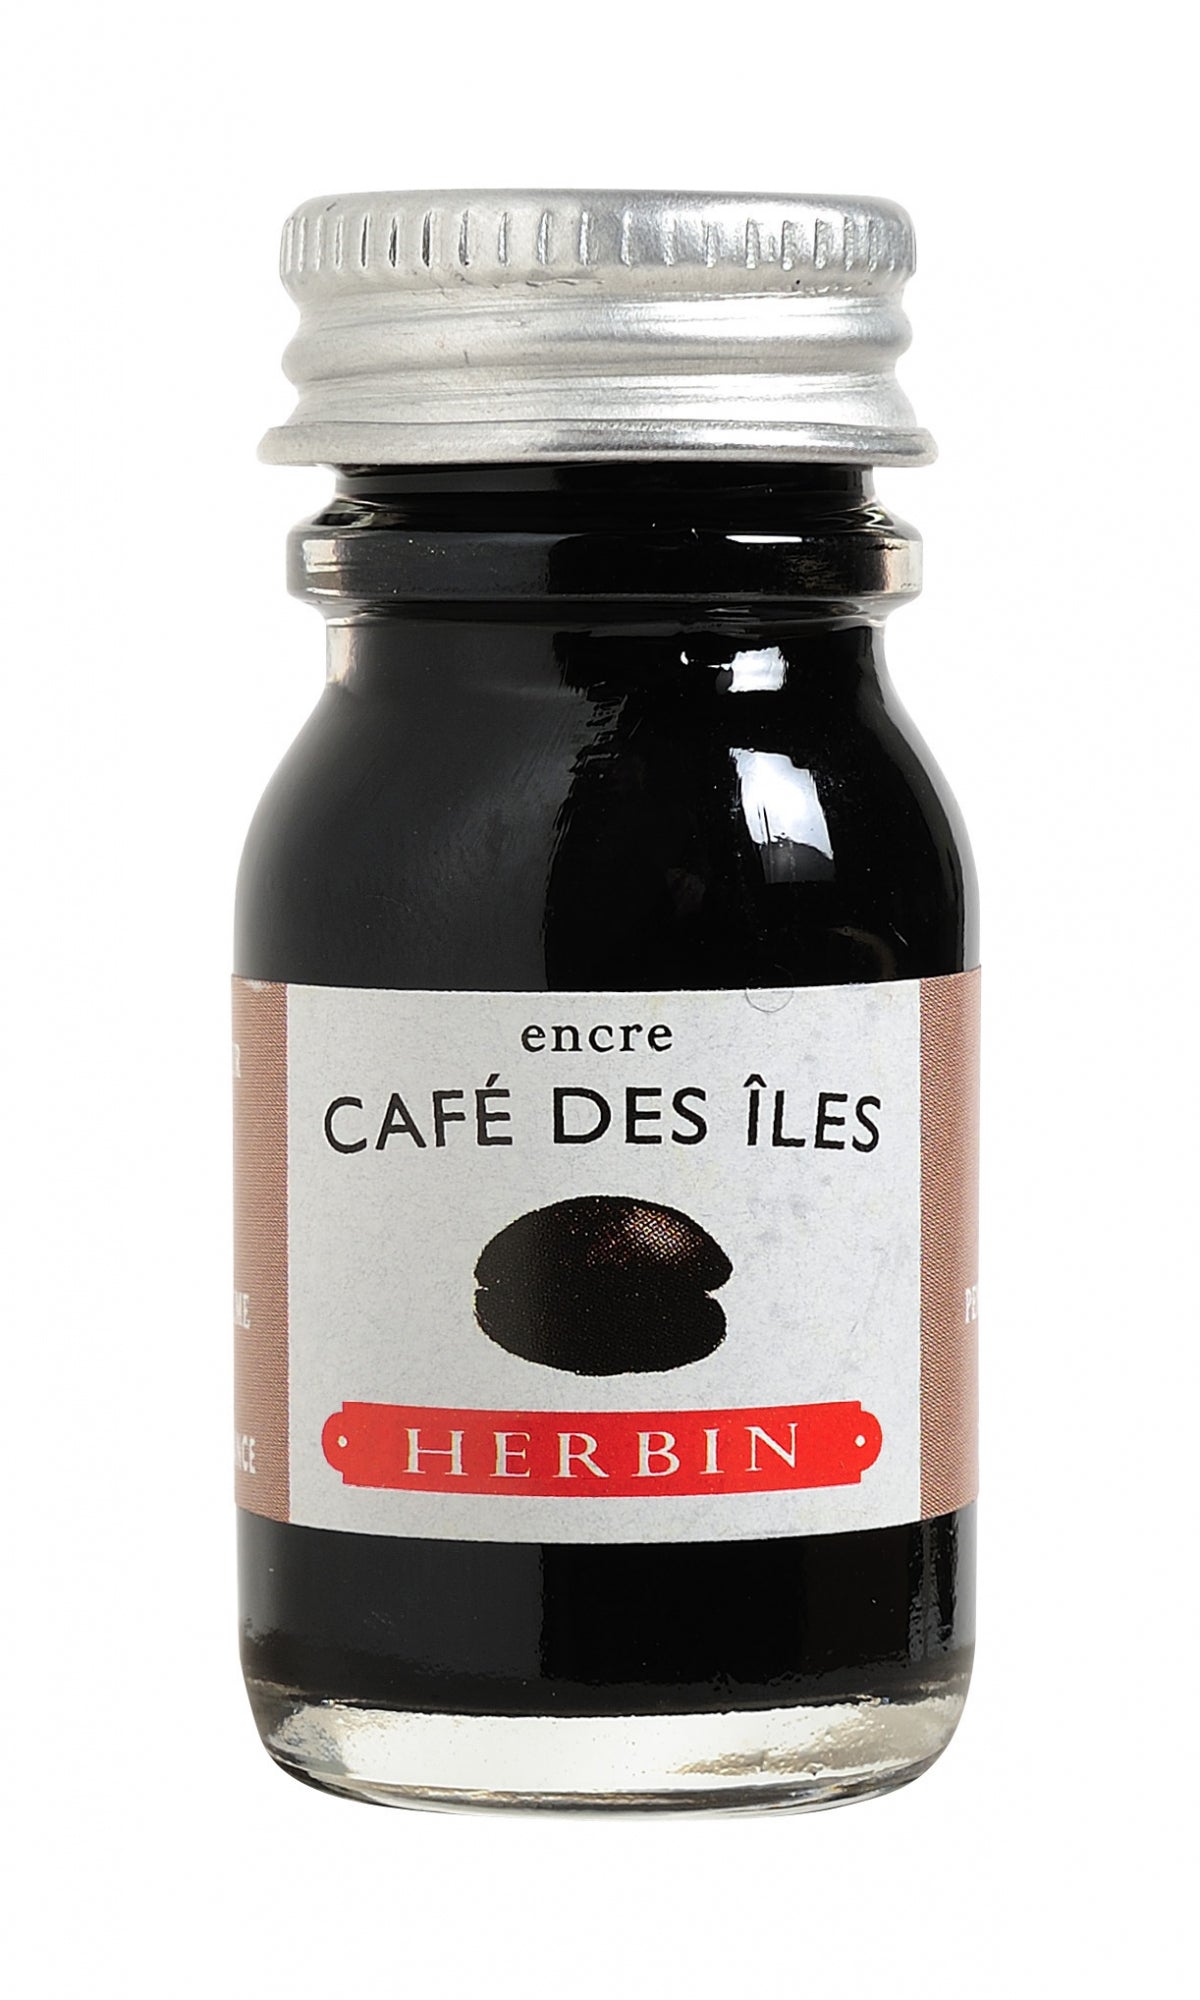 J Herbin Cafe des Iles